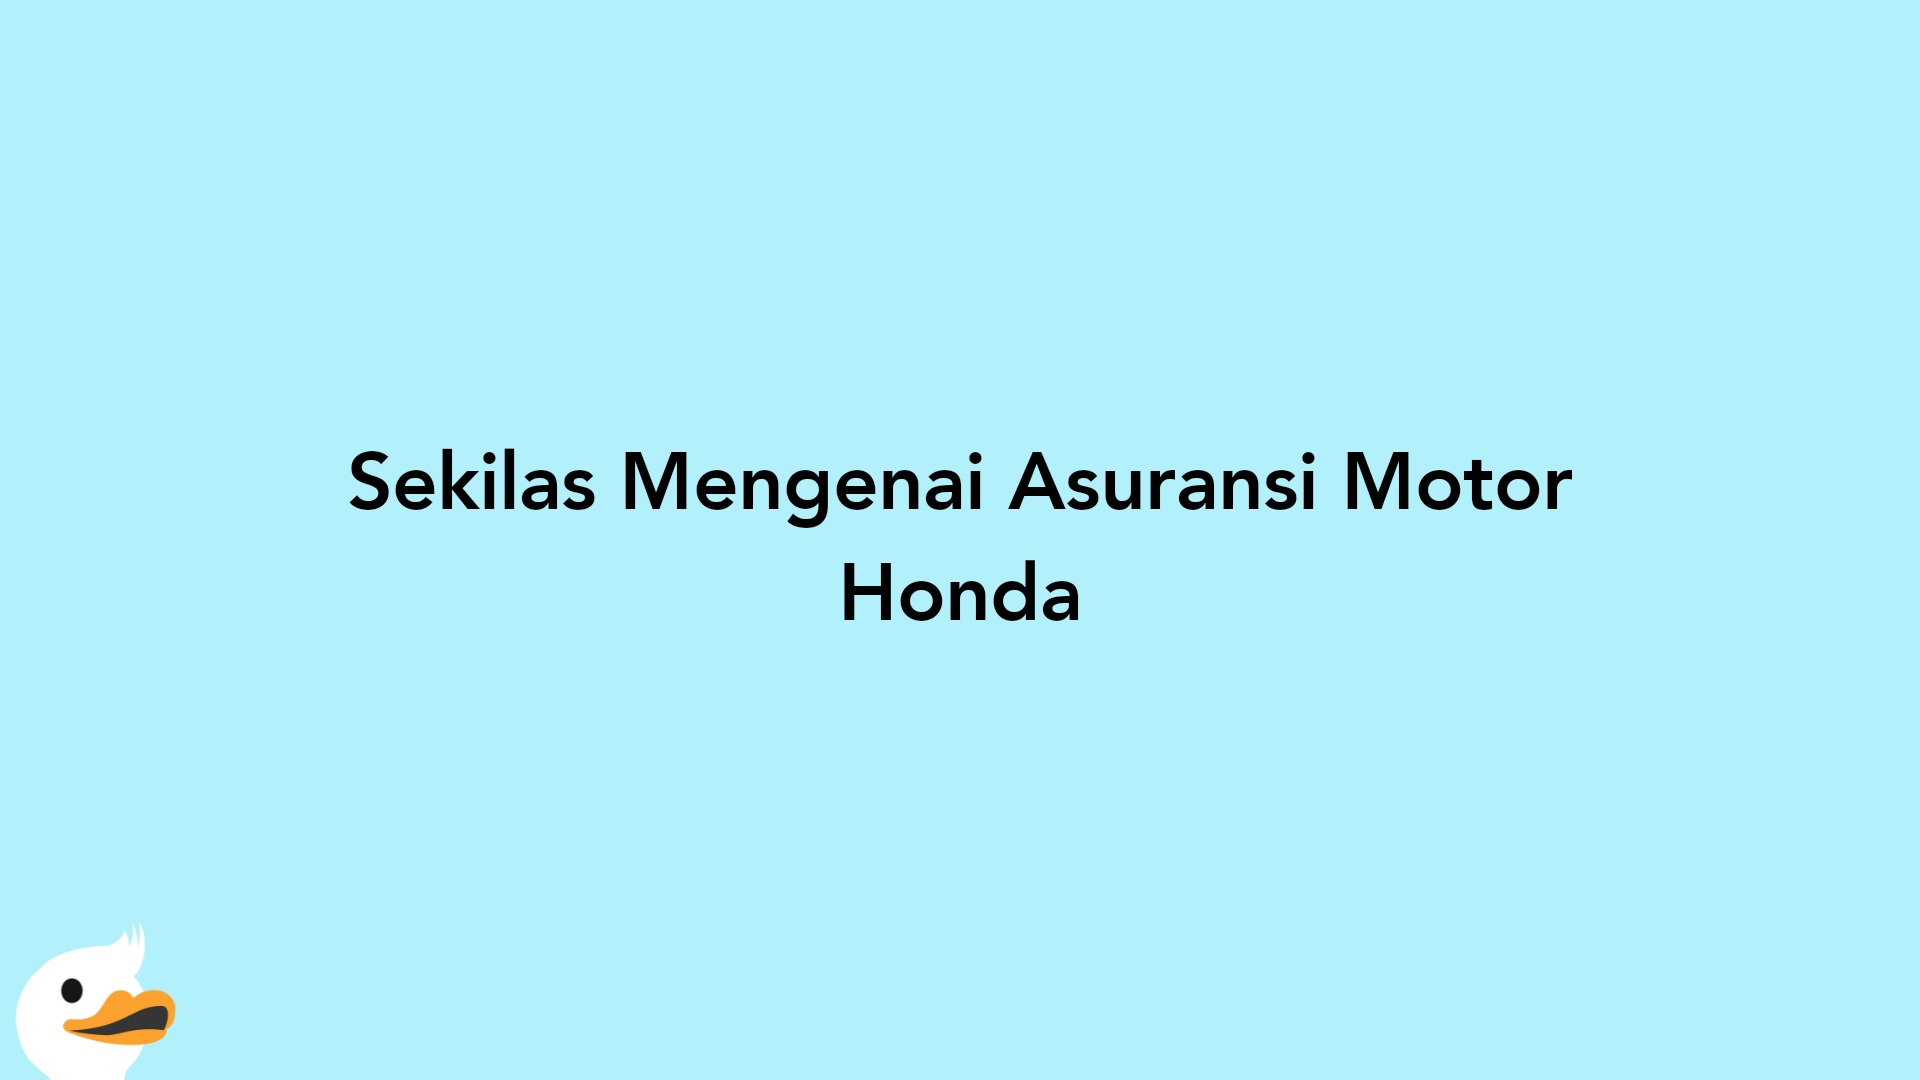 Sekilas Mengenai Asuransi Motor Honda